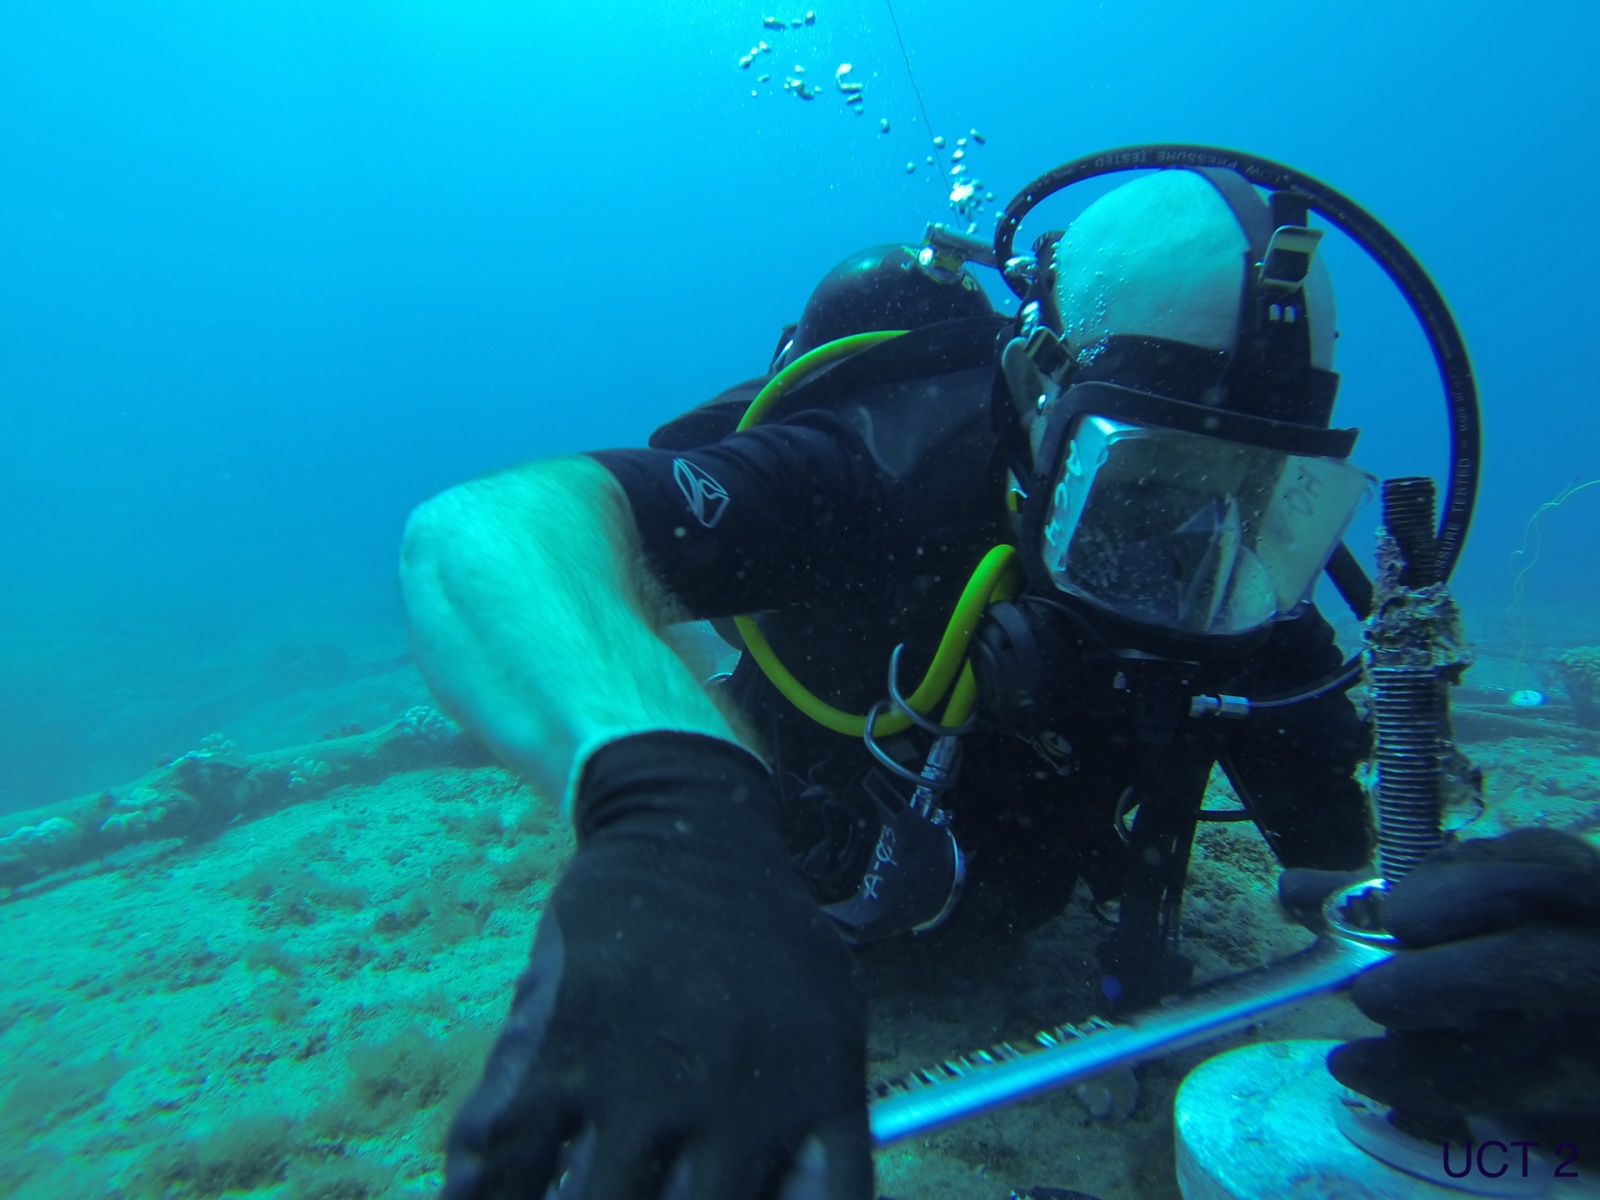 Сообщения в глубине: удивительная история подводного Интернета - 25